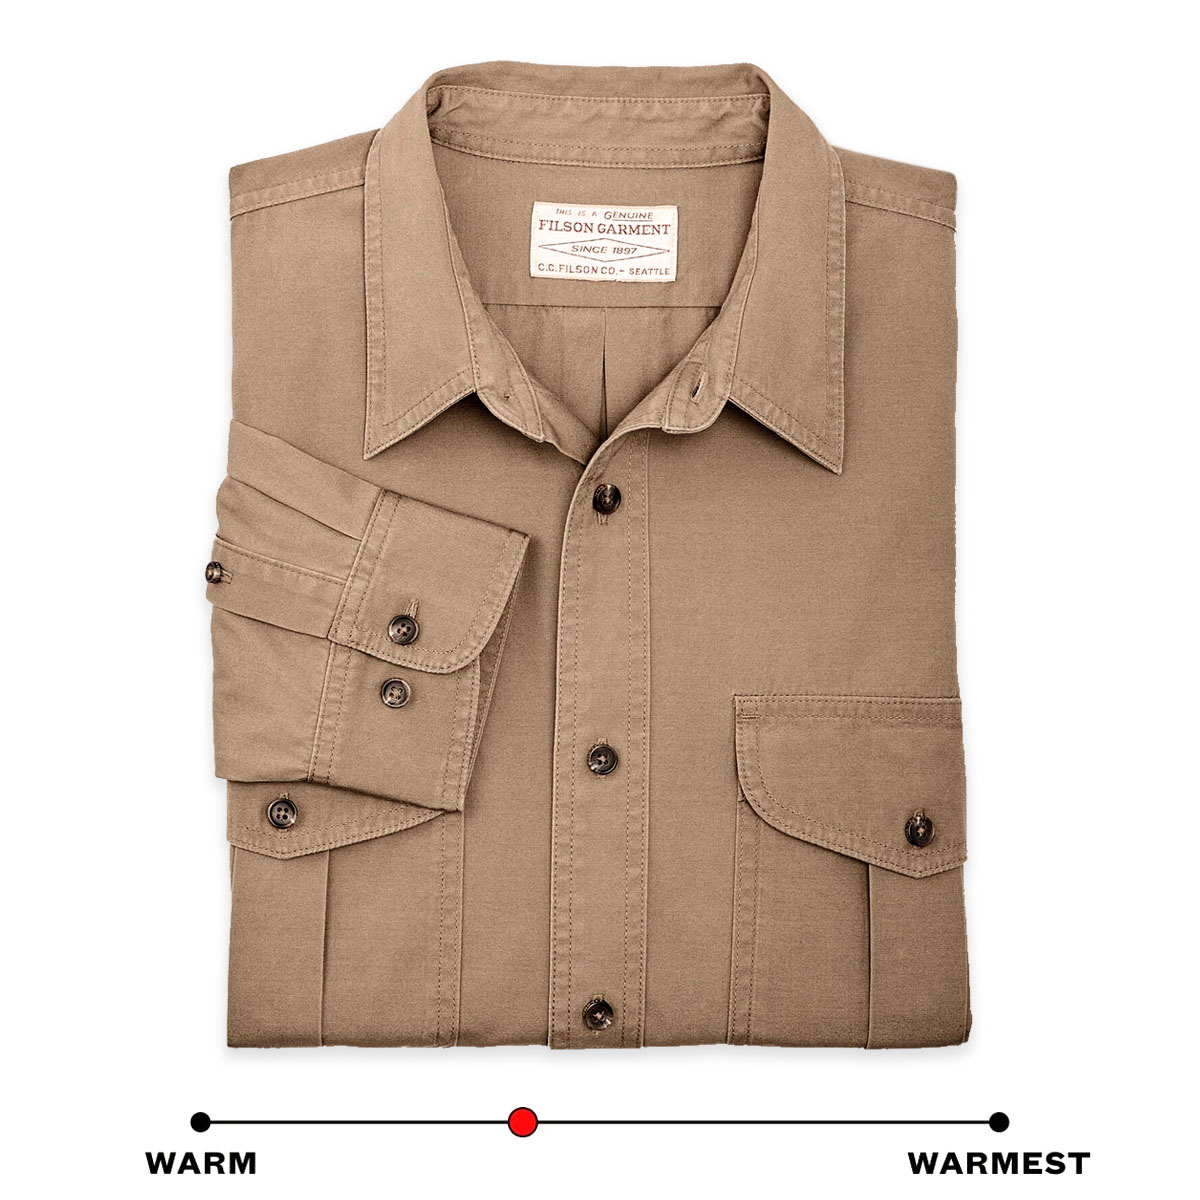 Filson Safari Cloth Guide Shirt Khaki, warm-warmest